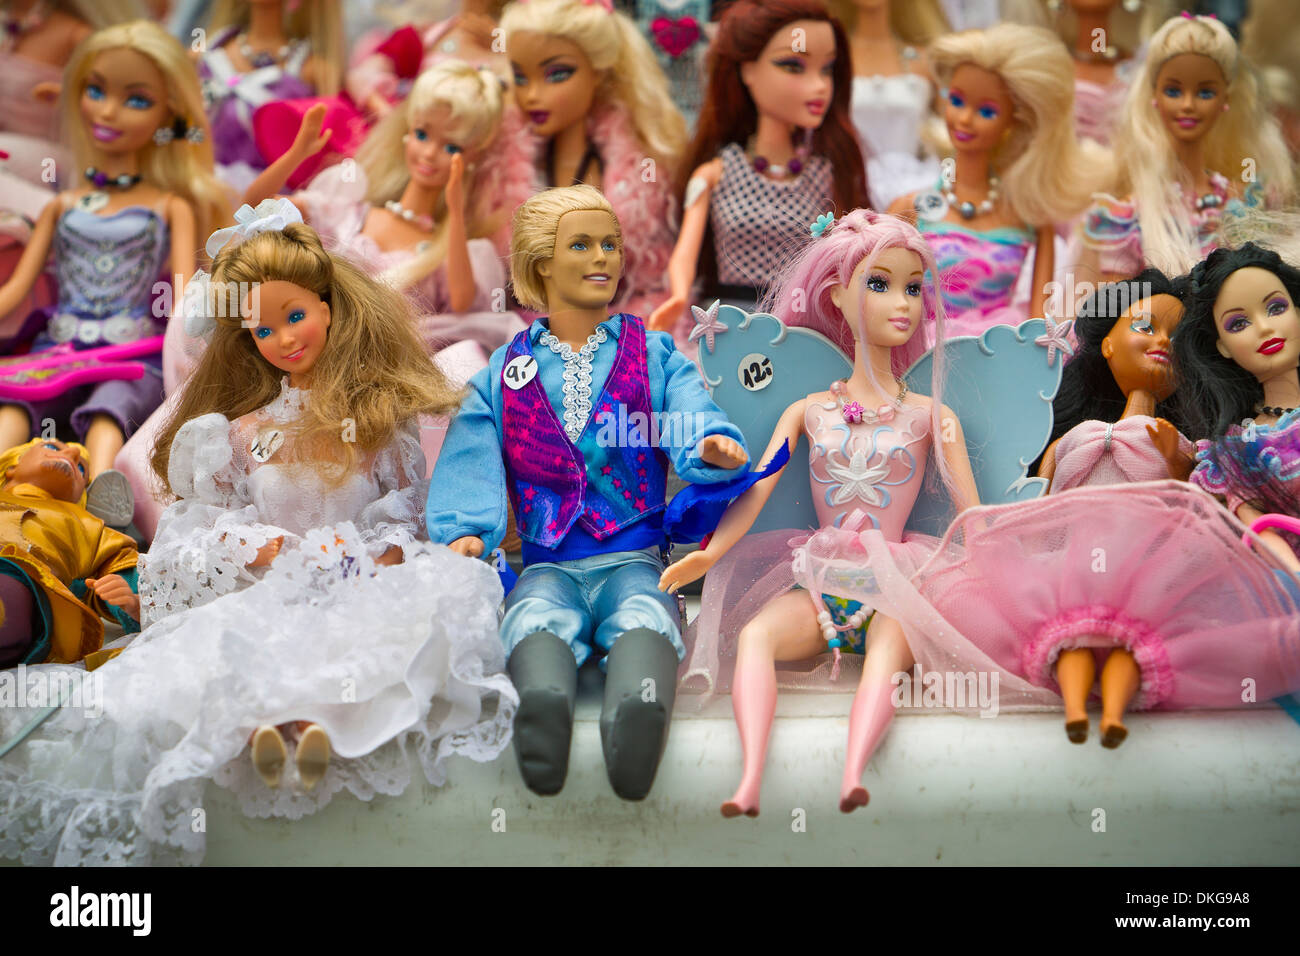 Barbies auf Flohmarkt Stockfotografie - Alamy